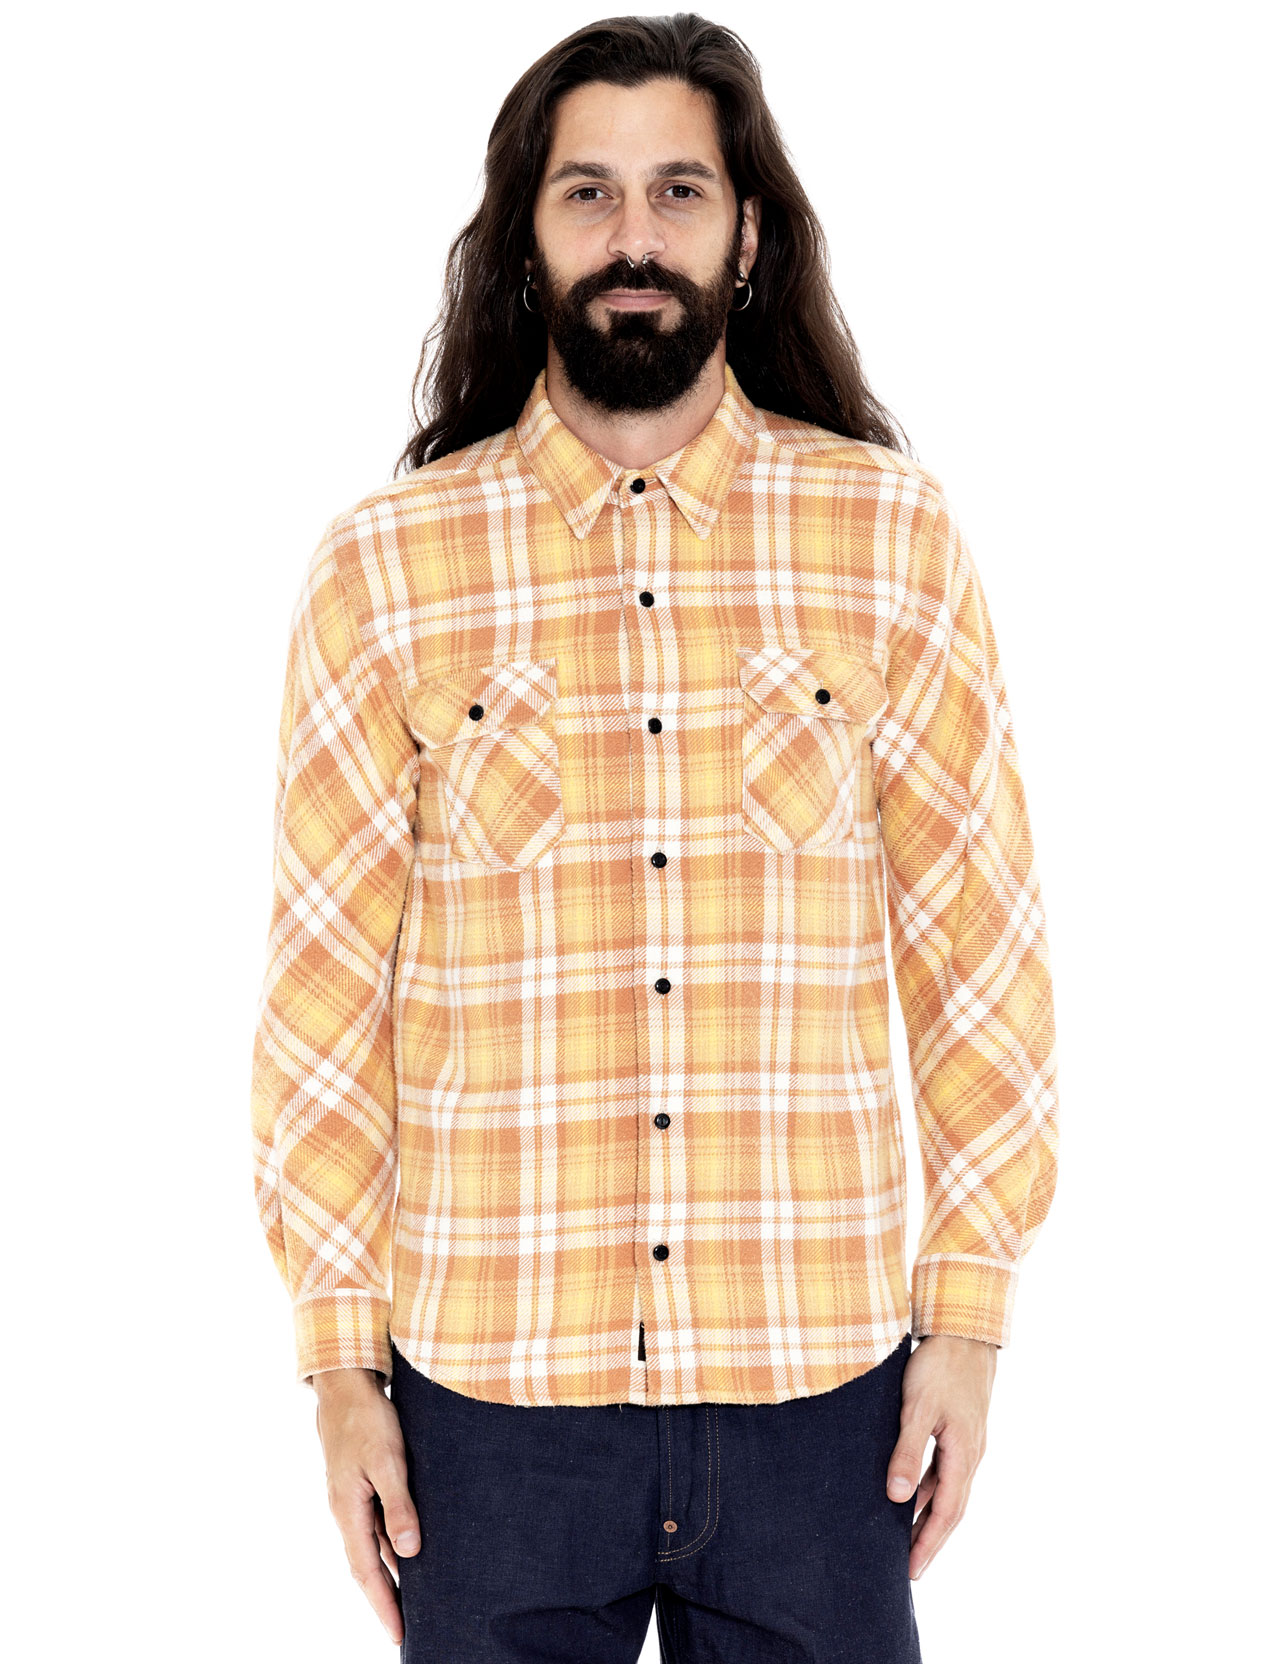 Indigofera - Bryson Check Flannel Shirt - Sun Faded Ochre